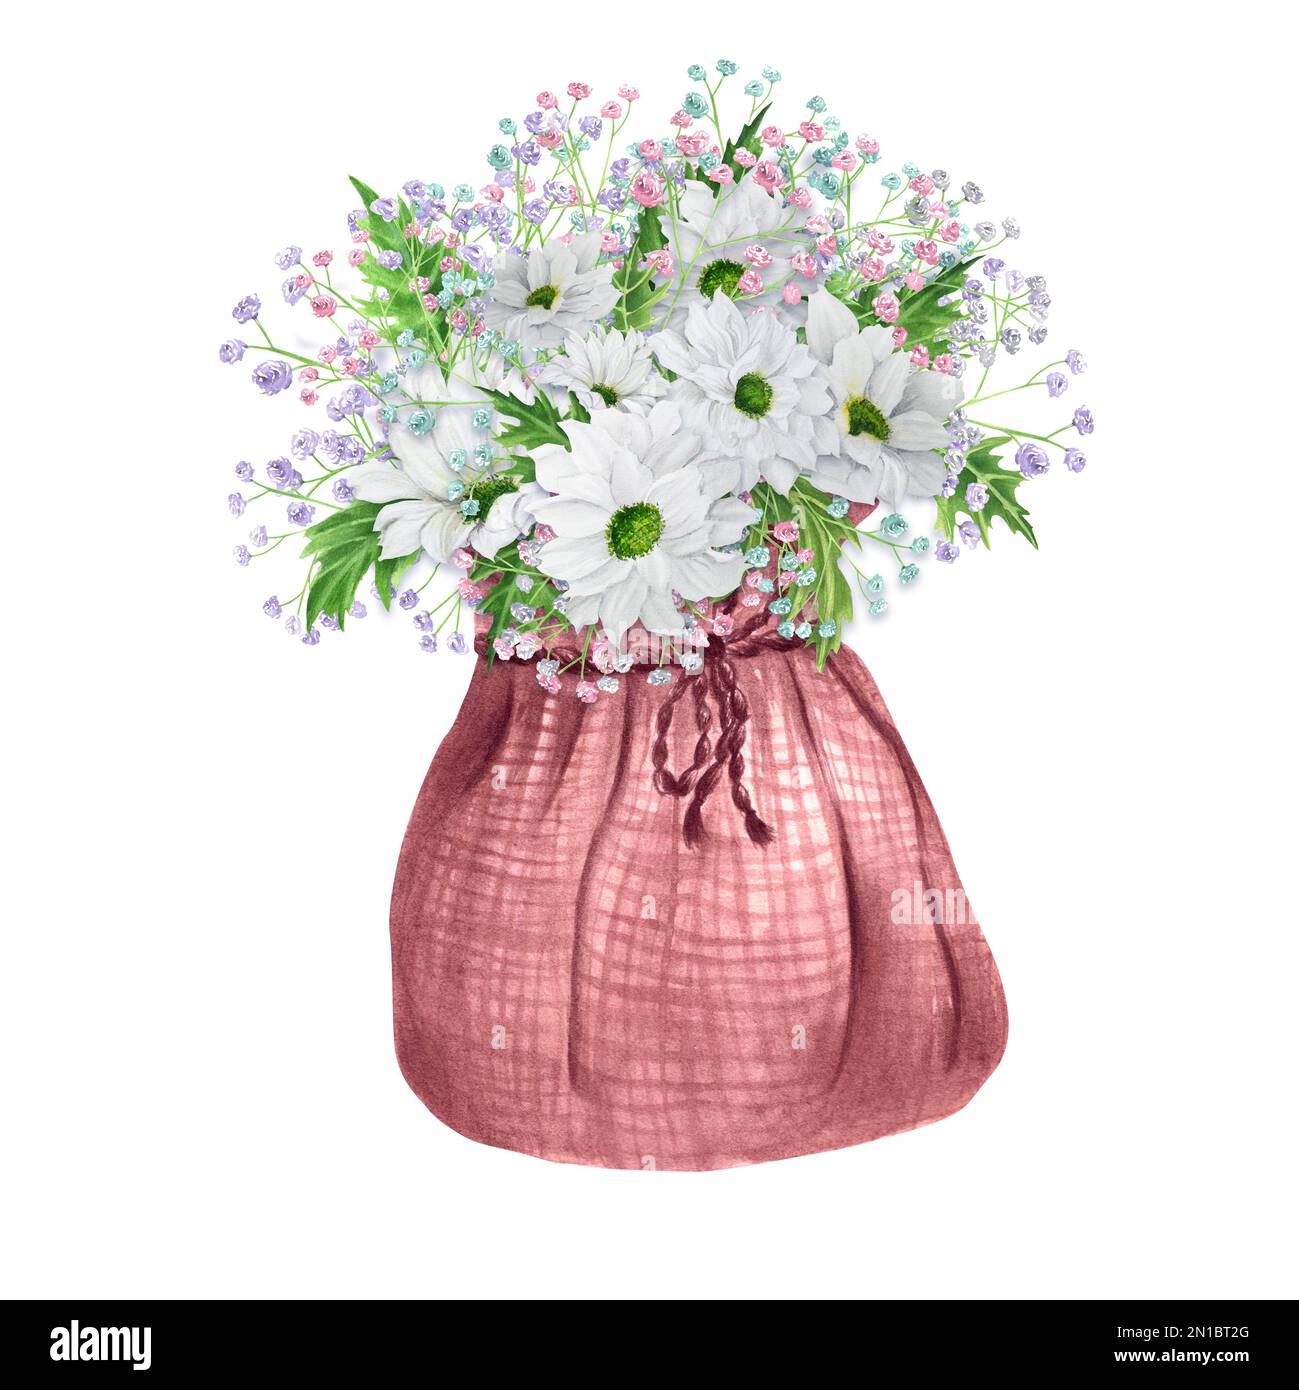 Bouquet de fleurs aquarelles dessinées à la main de chrysanthème blanc et autres fleurs dans un sac de toile de jute rose. Une petite partie de l'ensemble de grandes FLEURS Banque D'Images